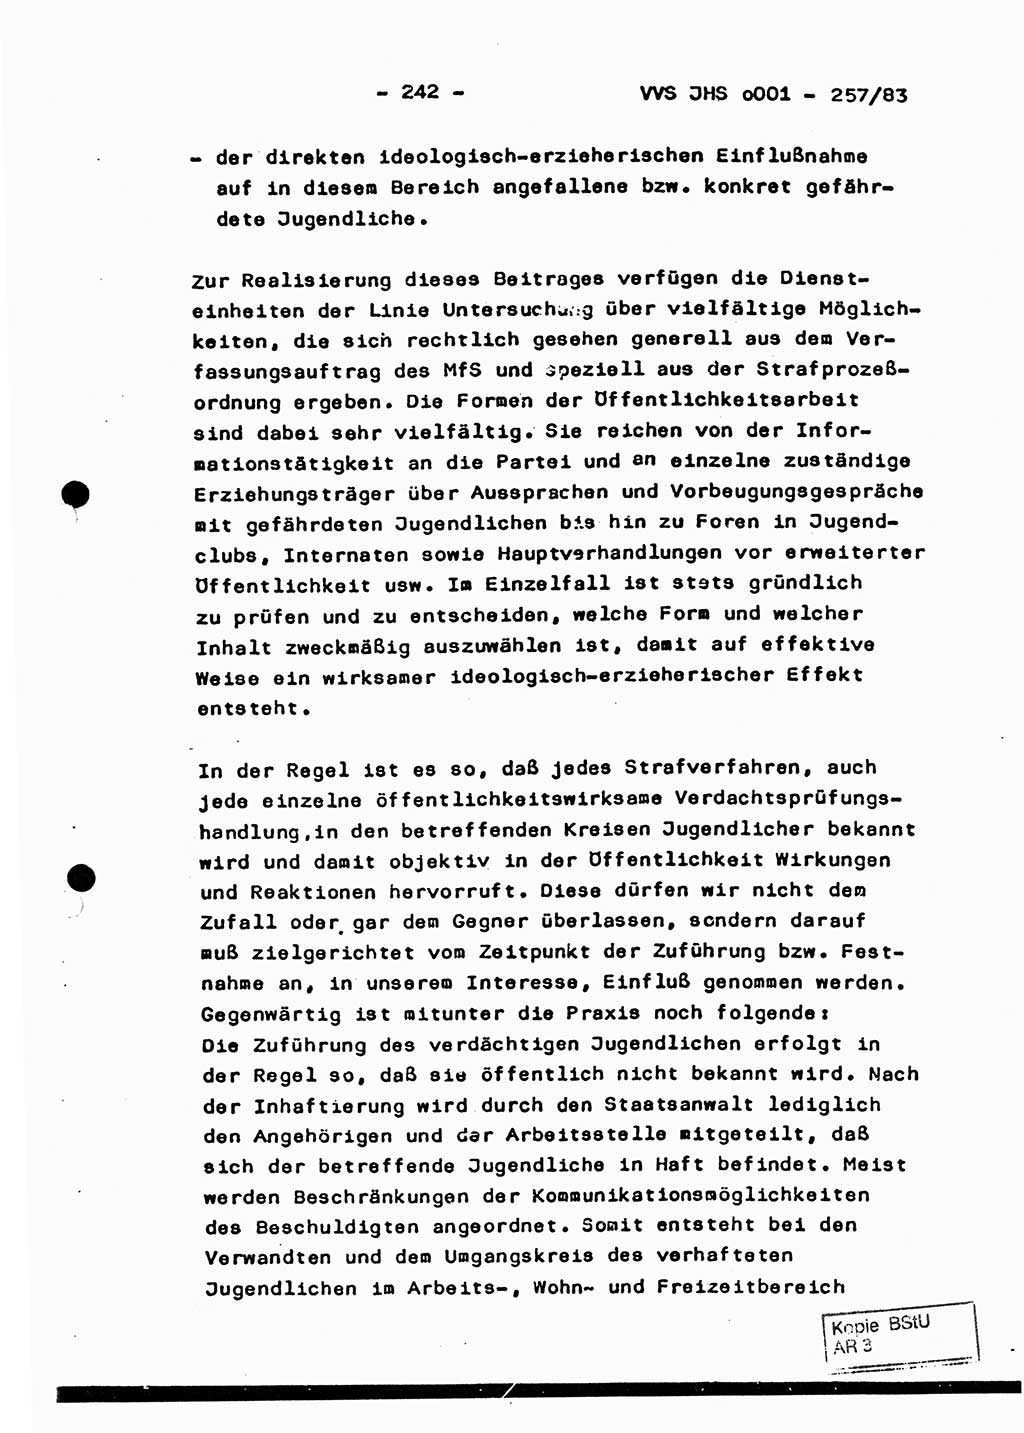 Dissertation, Oberst Helmut Lubas (BV Mdg.), Oberstleutnant Manfred Eschberger (HA IX), Oberleutnant Hans-Jürgen Ludwig (JHS), Ministerium für Staatssicherheit (MfS) [Deutsche Demokratische Republik (DDR)], Juristische Hochschule (JHS), Vertrauliche Verschlußsache (VVS) o001-257/83, Potsdam 1983, Seite 242 (Diss. MfS DDR JHS VVS o001-257/83 1983, S. 242)